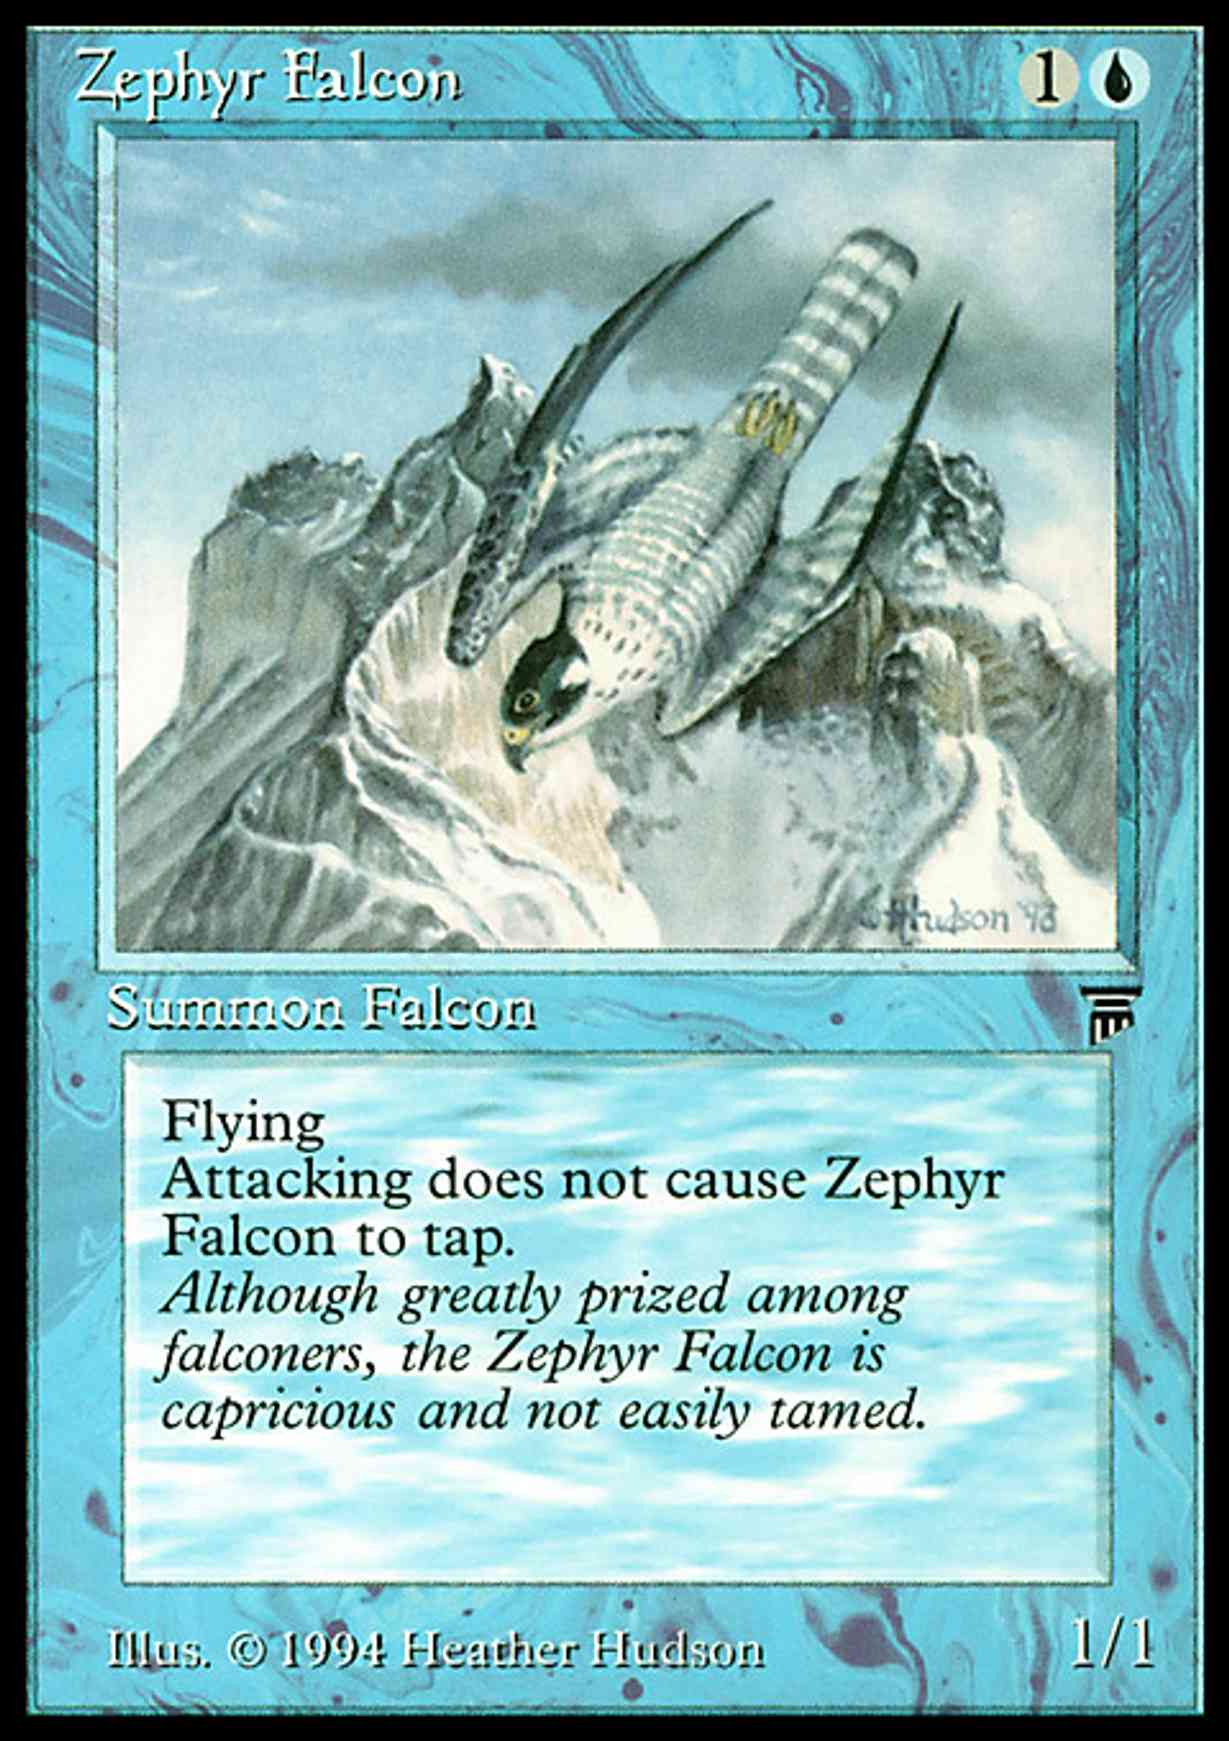 Zephyr Falcon magic card front